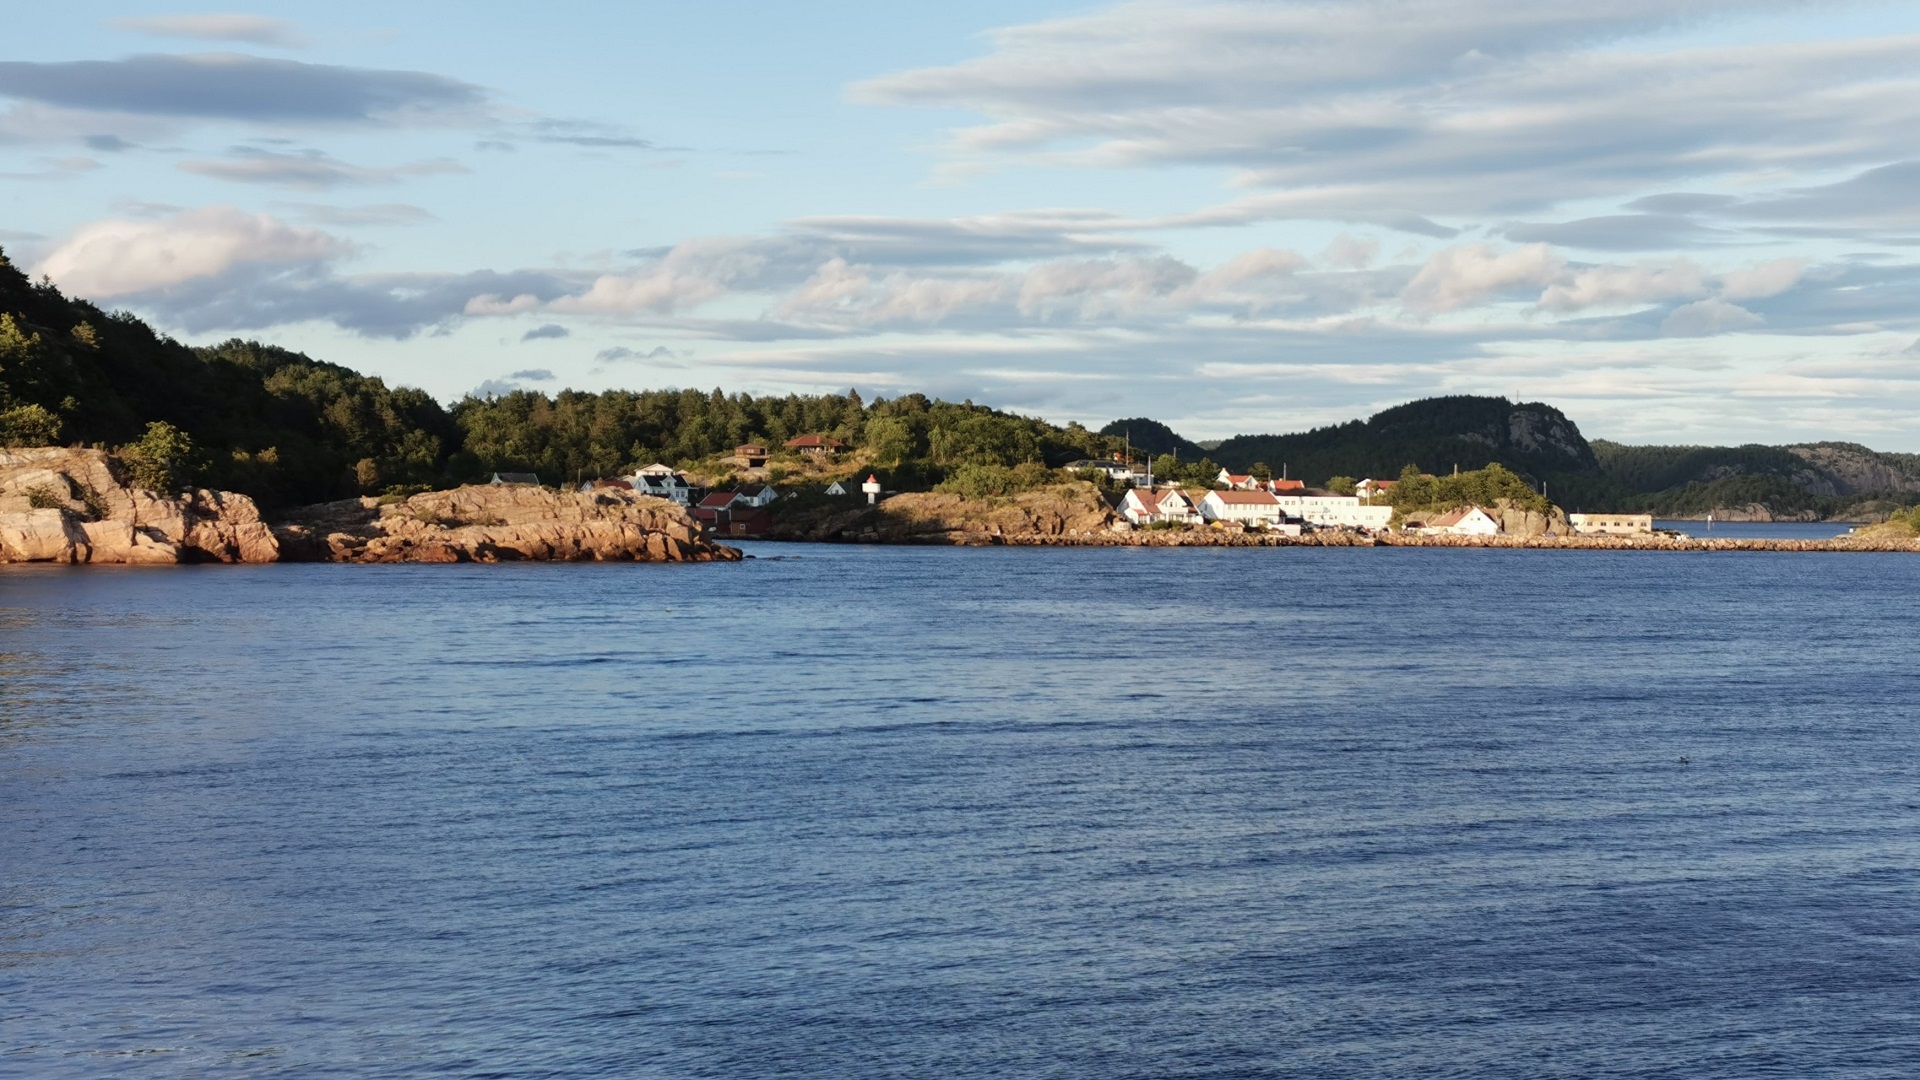 Blick auf eine Stelle nahe dem kleinen Hafen in der Lussevika bei Åvik auf dem Weg zum Angeln